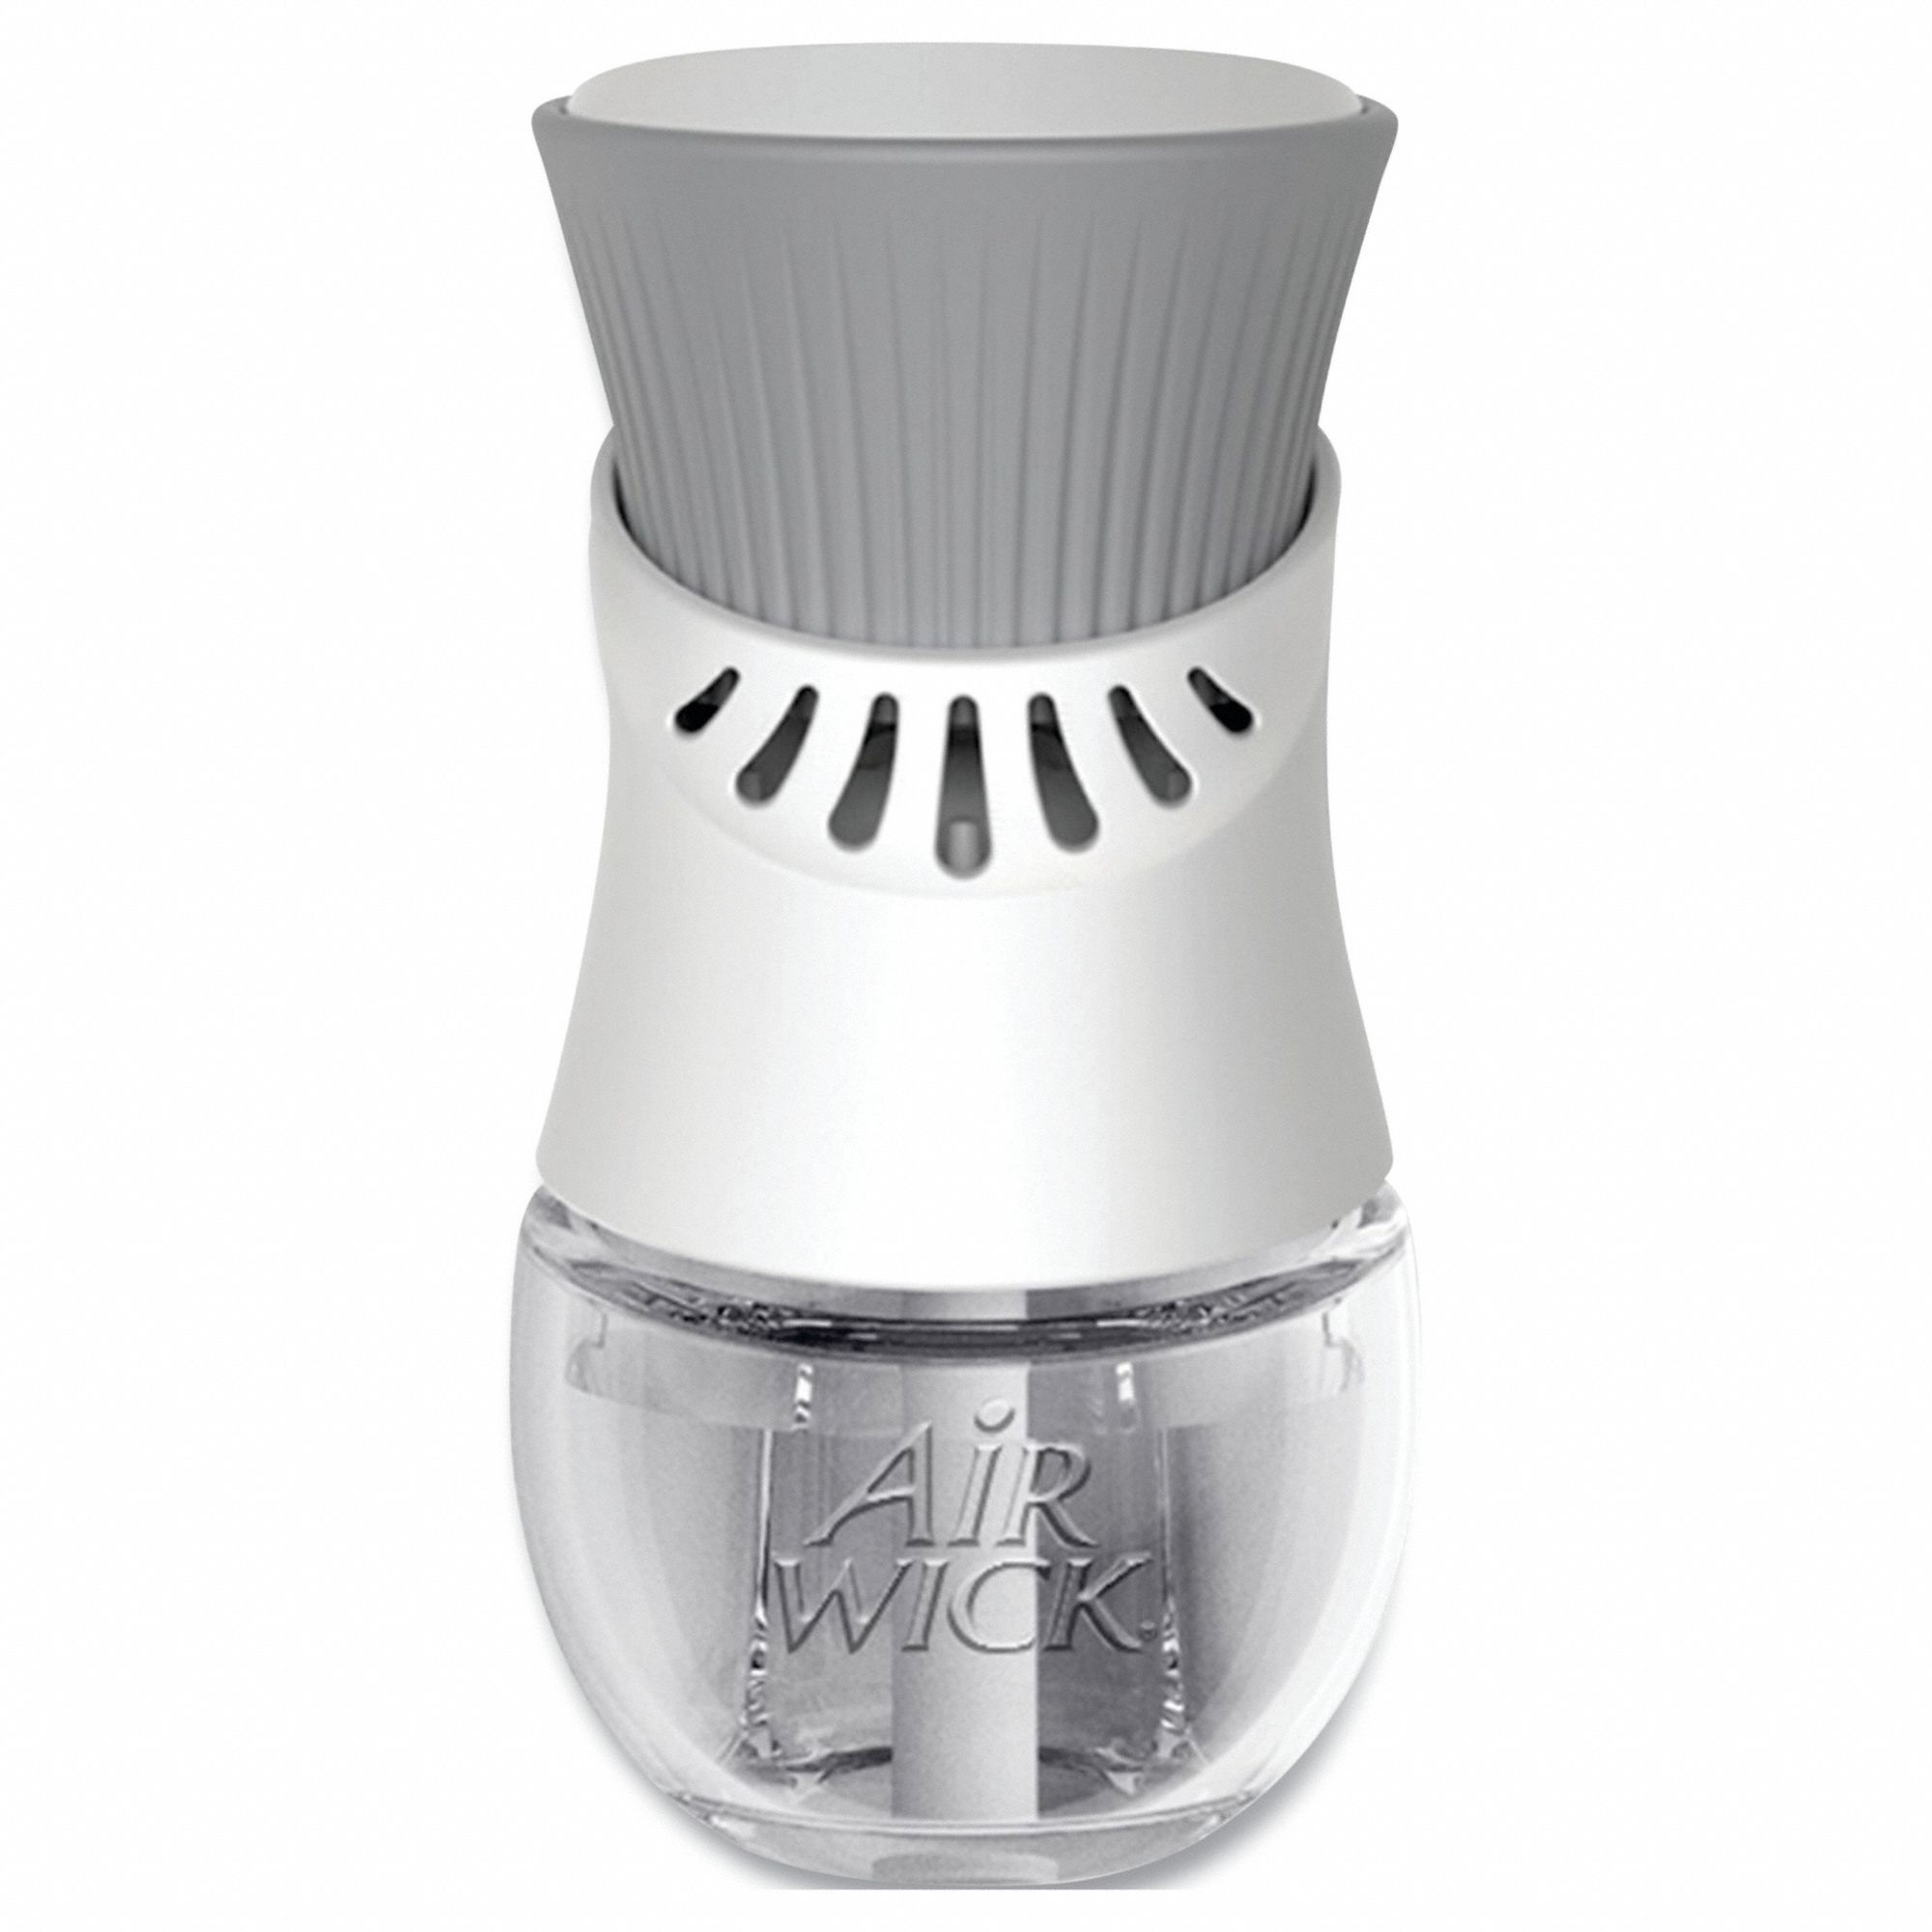 Air Freshener Dispenser: Air Wick®, Plug In, Dispenser Only, Cartridge, White, 6 PK